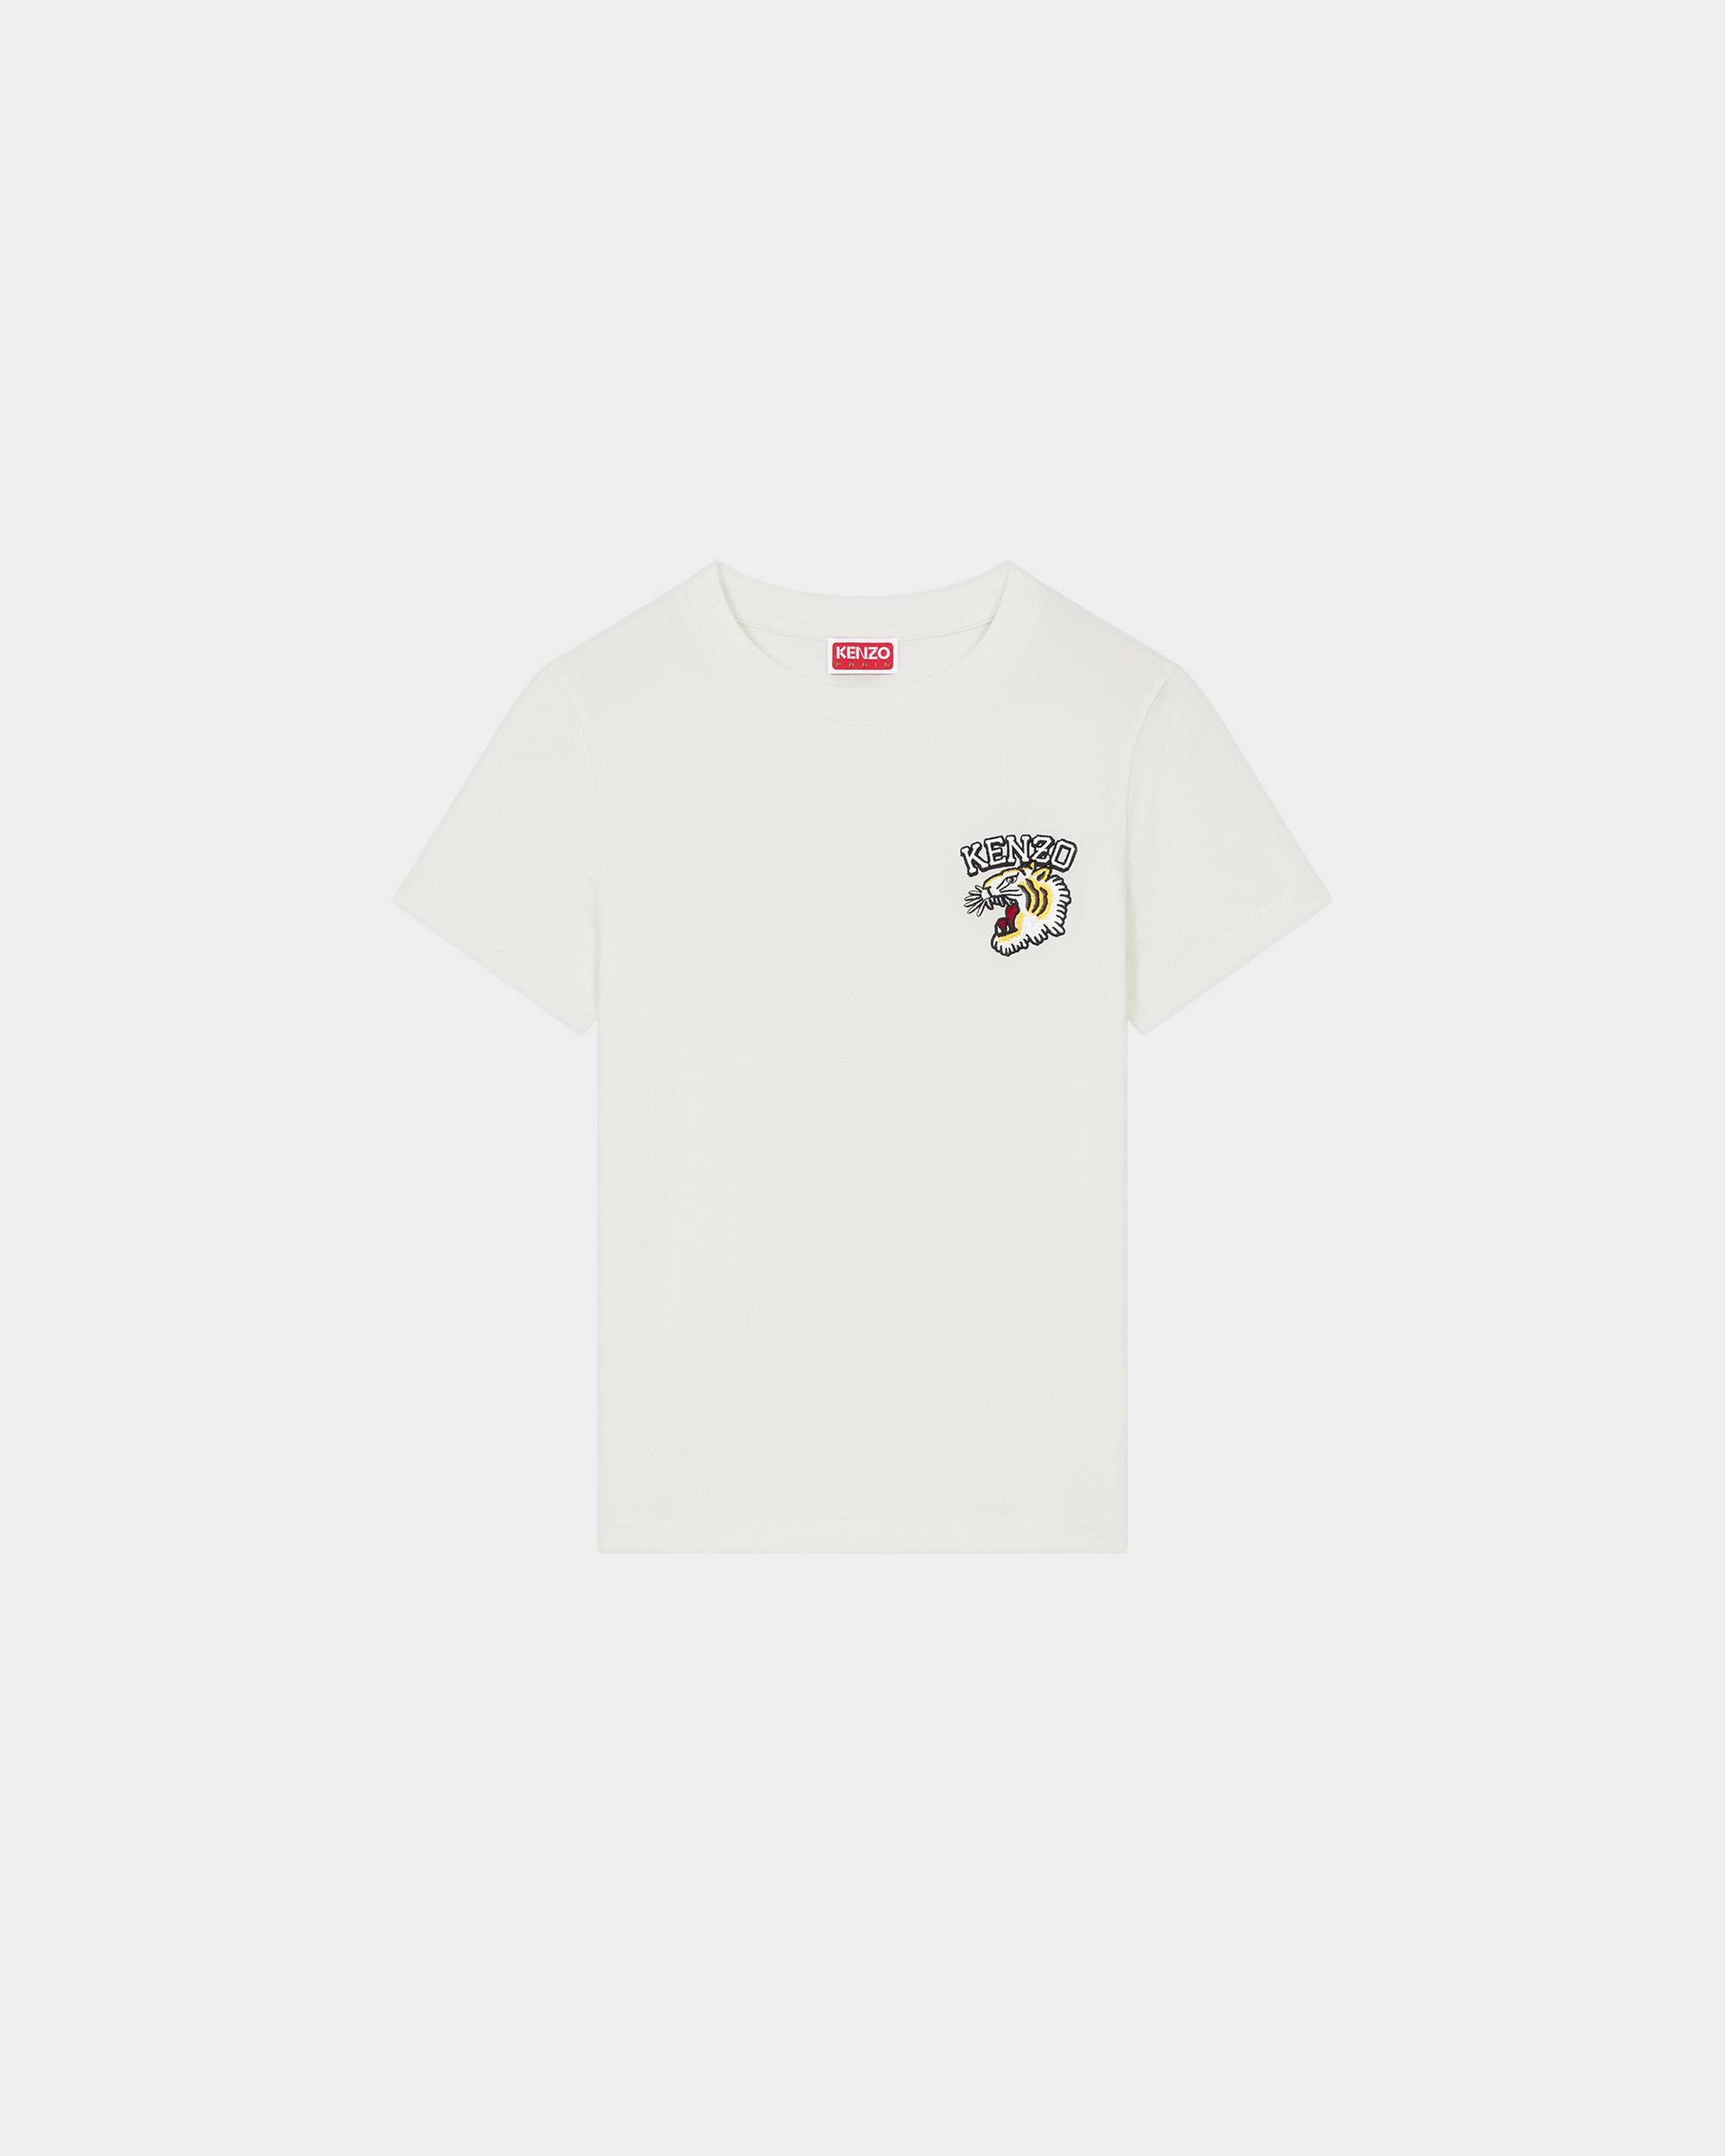 'Varsity Tiger' T-shirt - 1